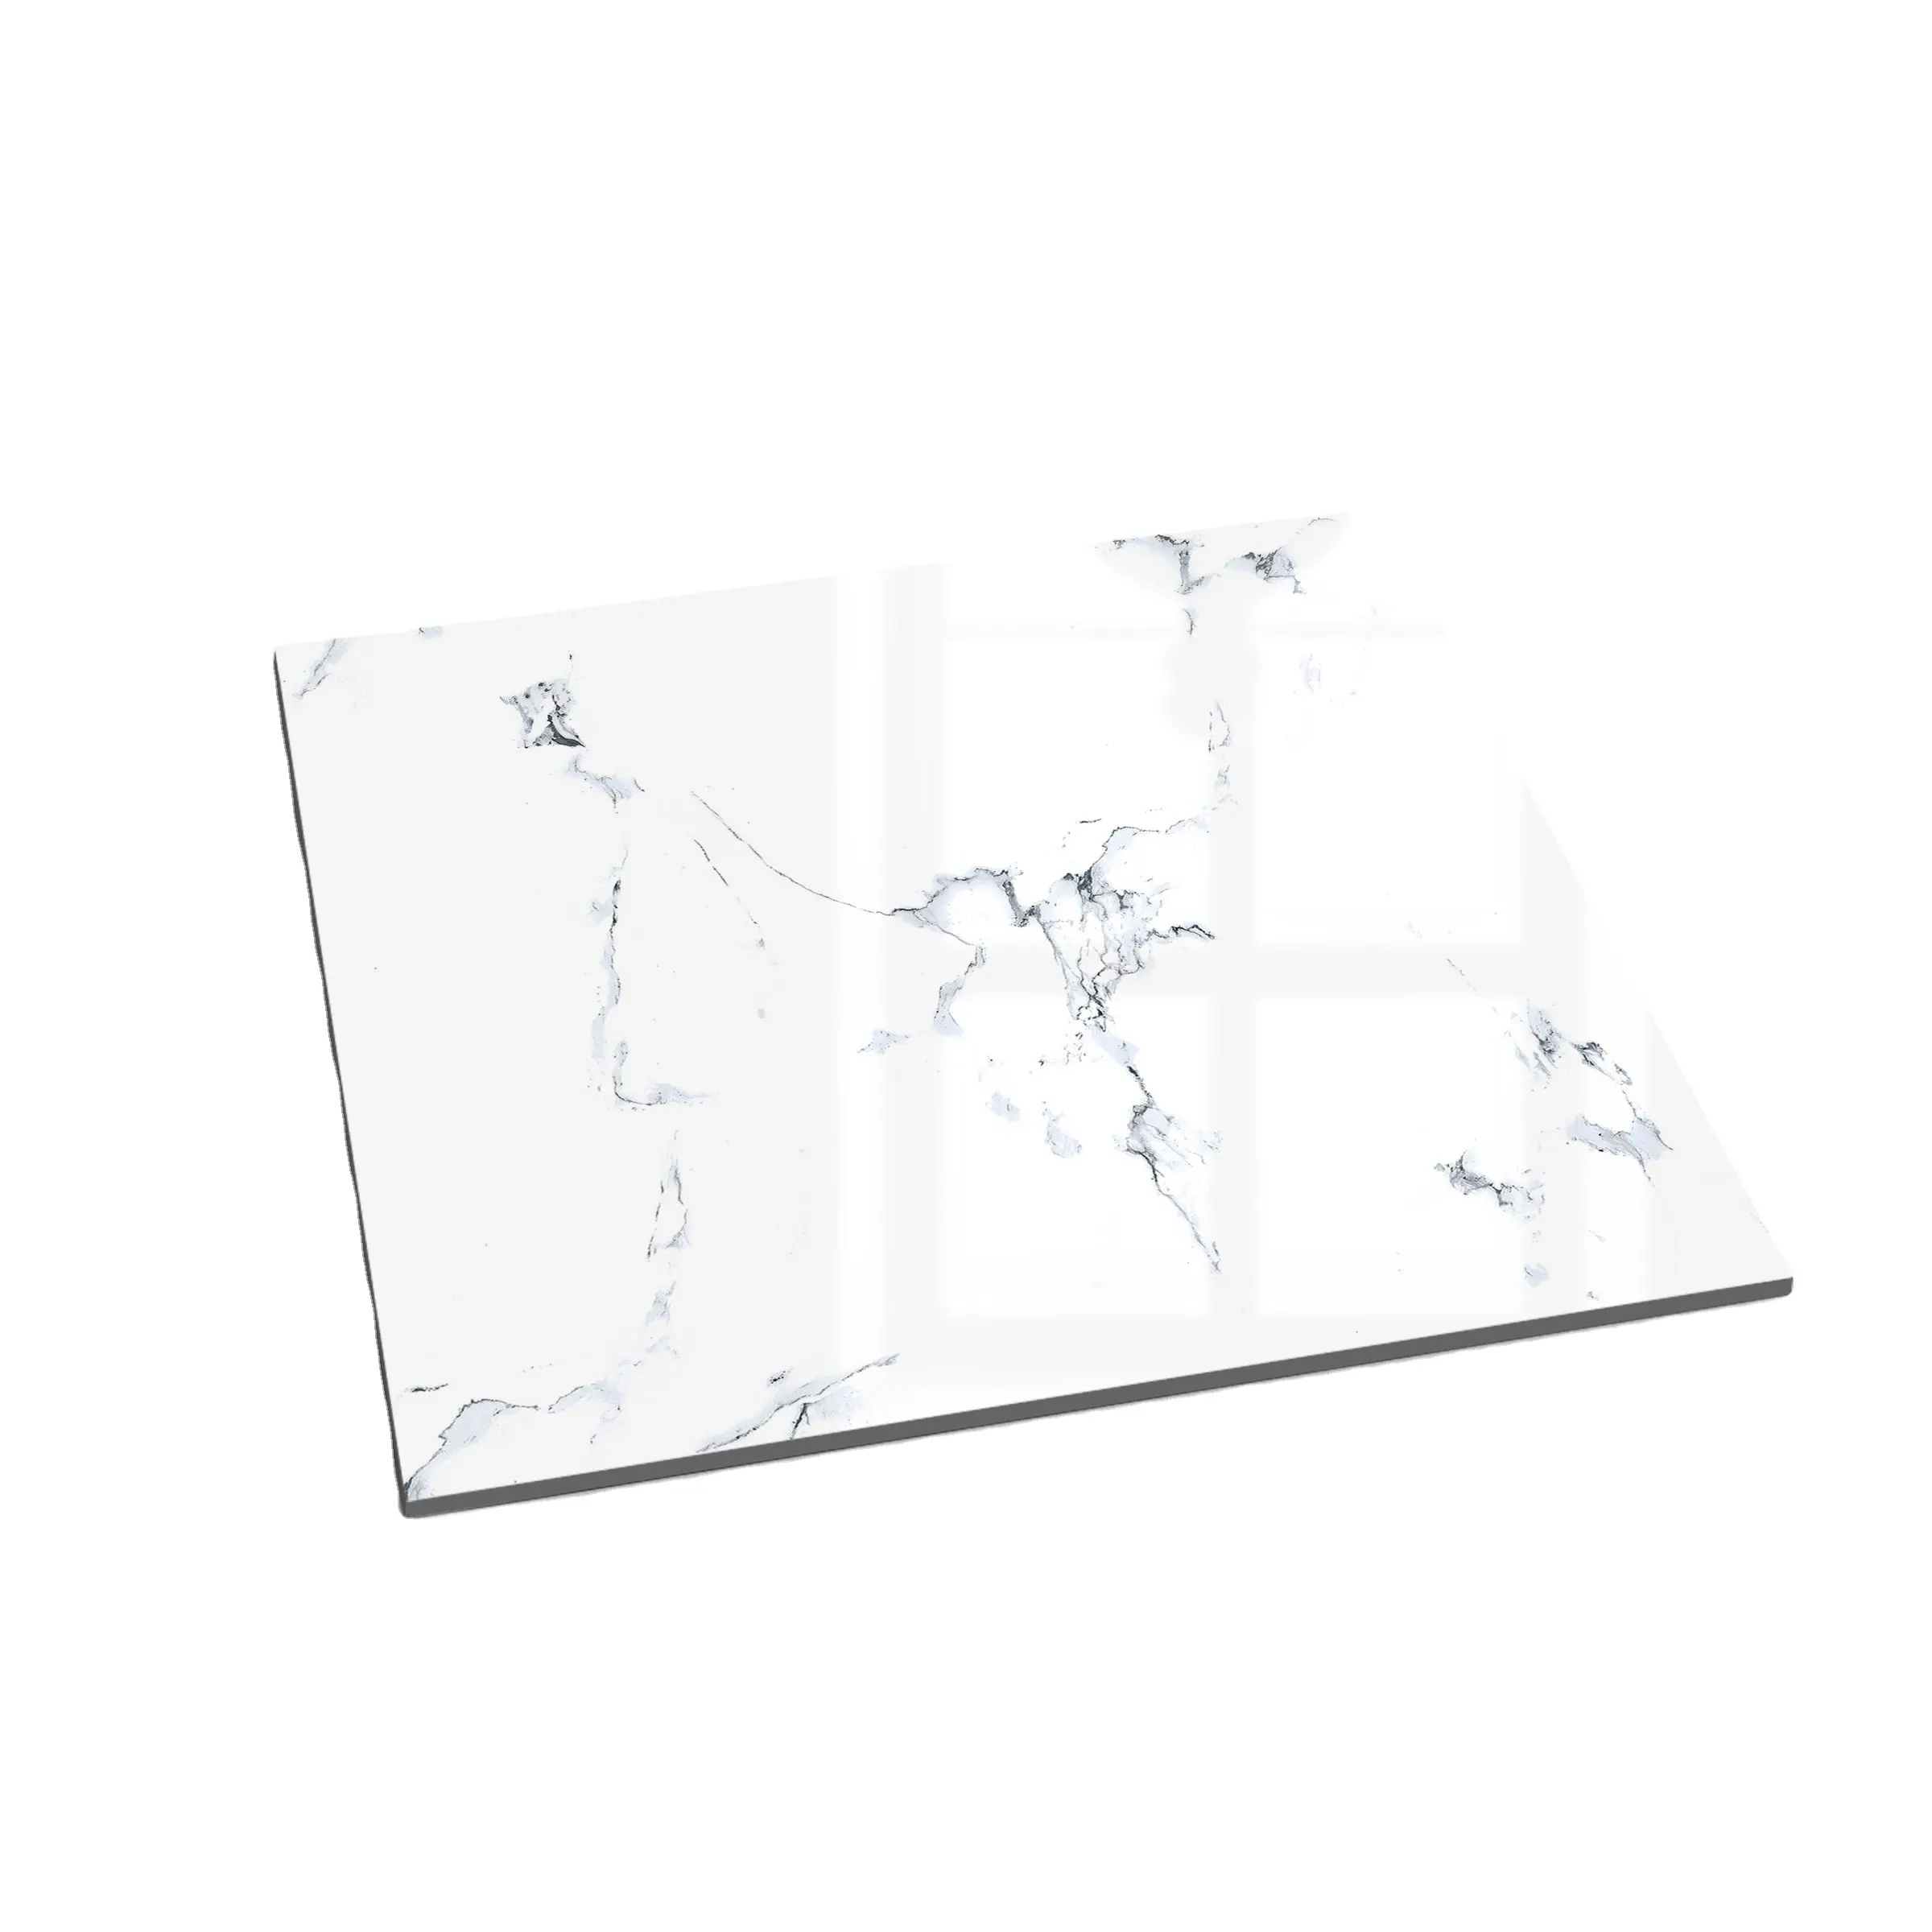 Piastrelle per pavimenti in porcellana bianca lucida per bagno in gres porcellanato 600x600mm india